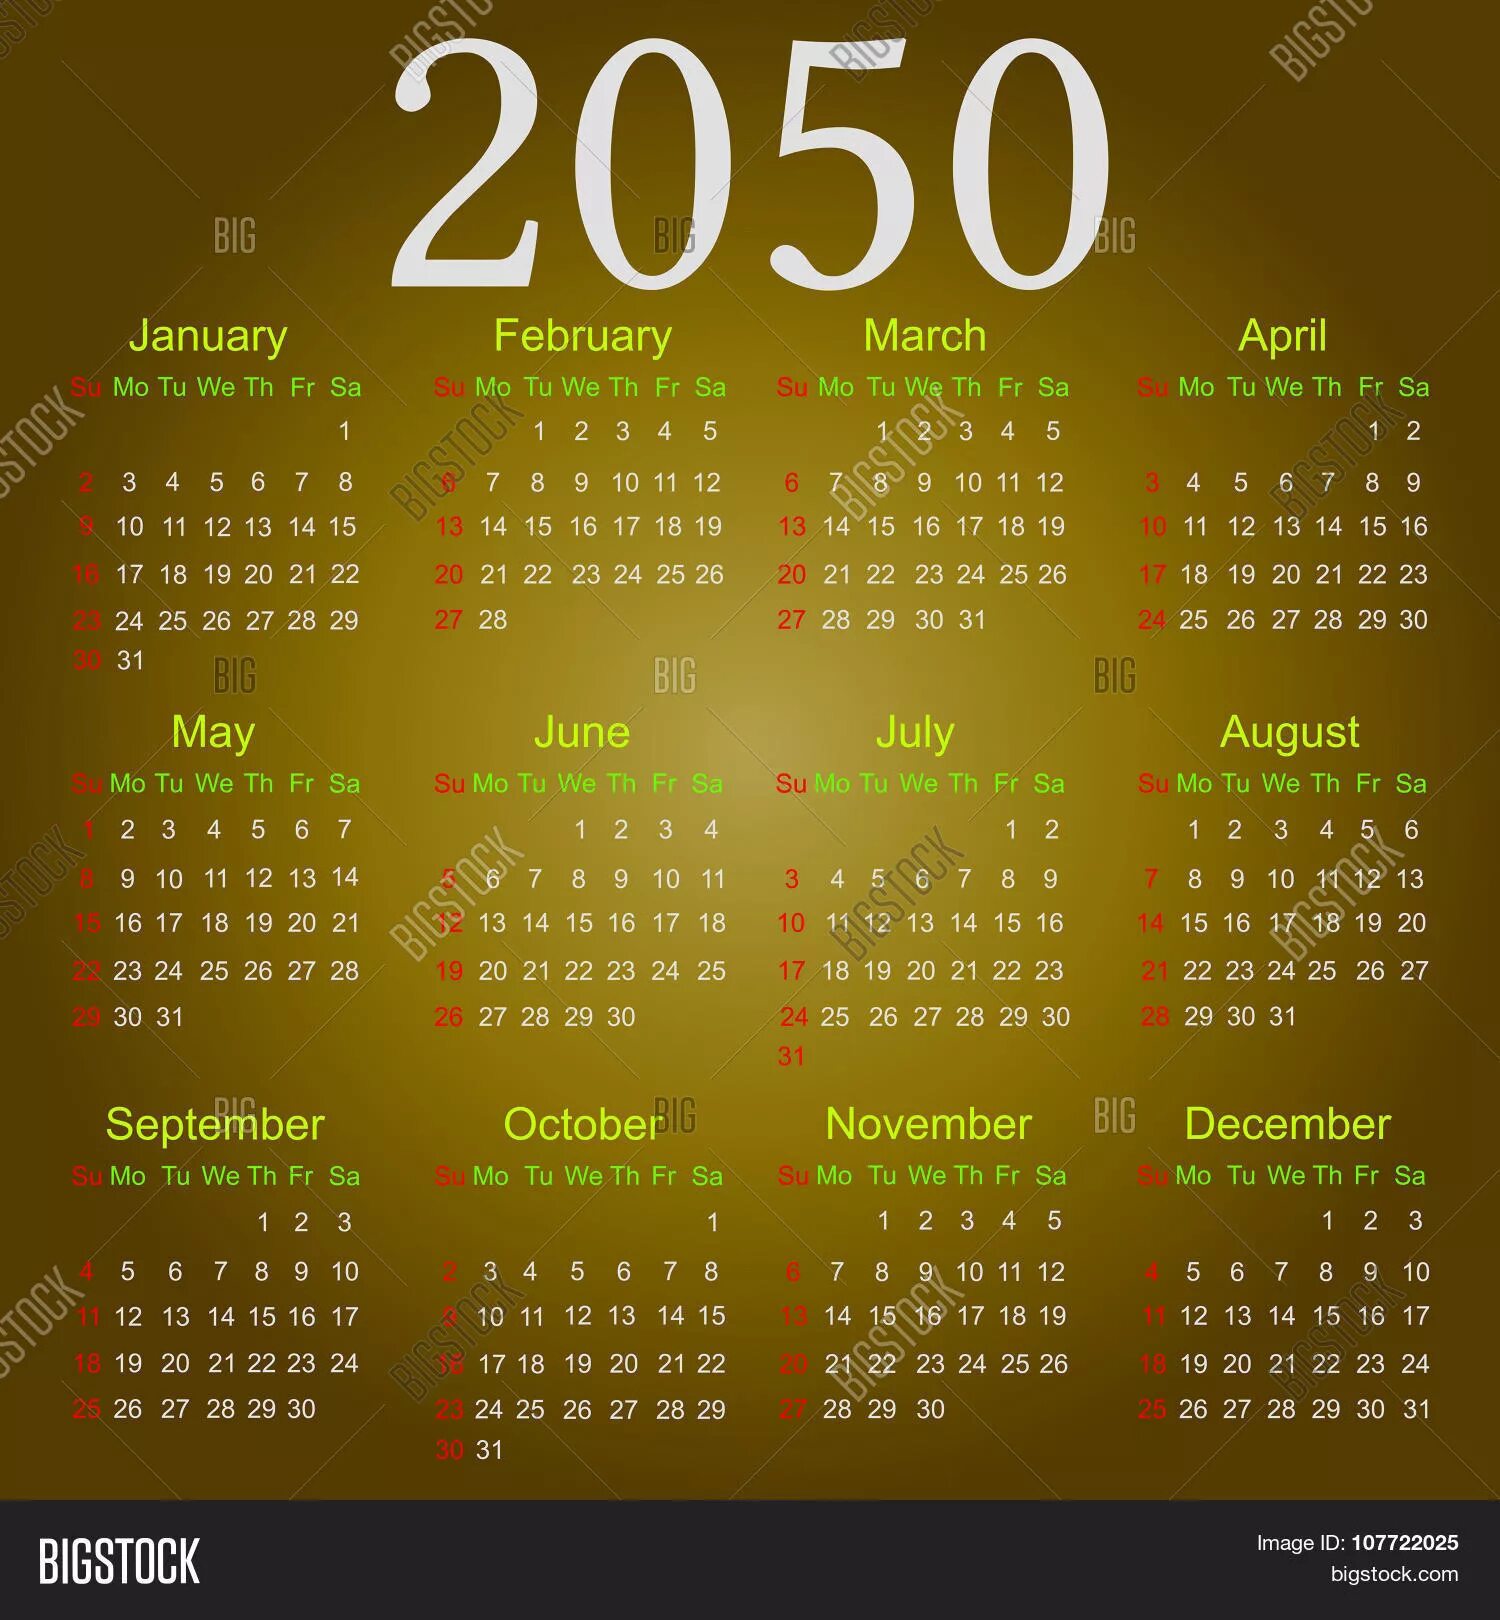 Календарь 2050 года. Календарь 2033 года. Календарь 2033 года по месяцам. Календарь 2050 года на русском. 12 апреля 2050 день недели решение впр